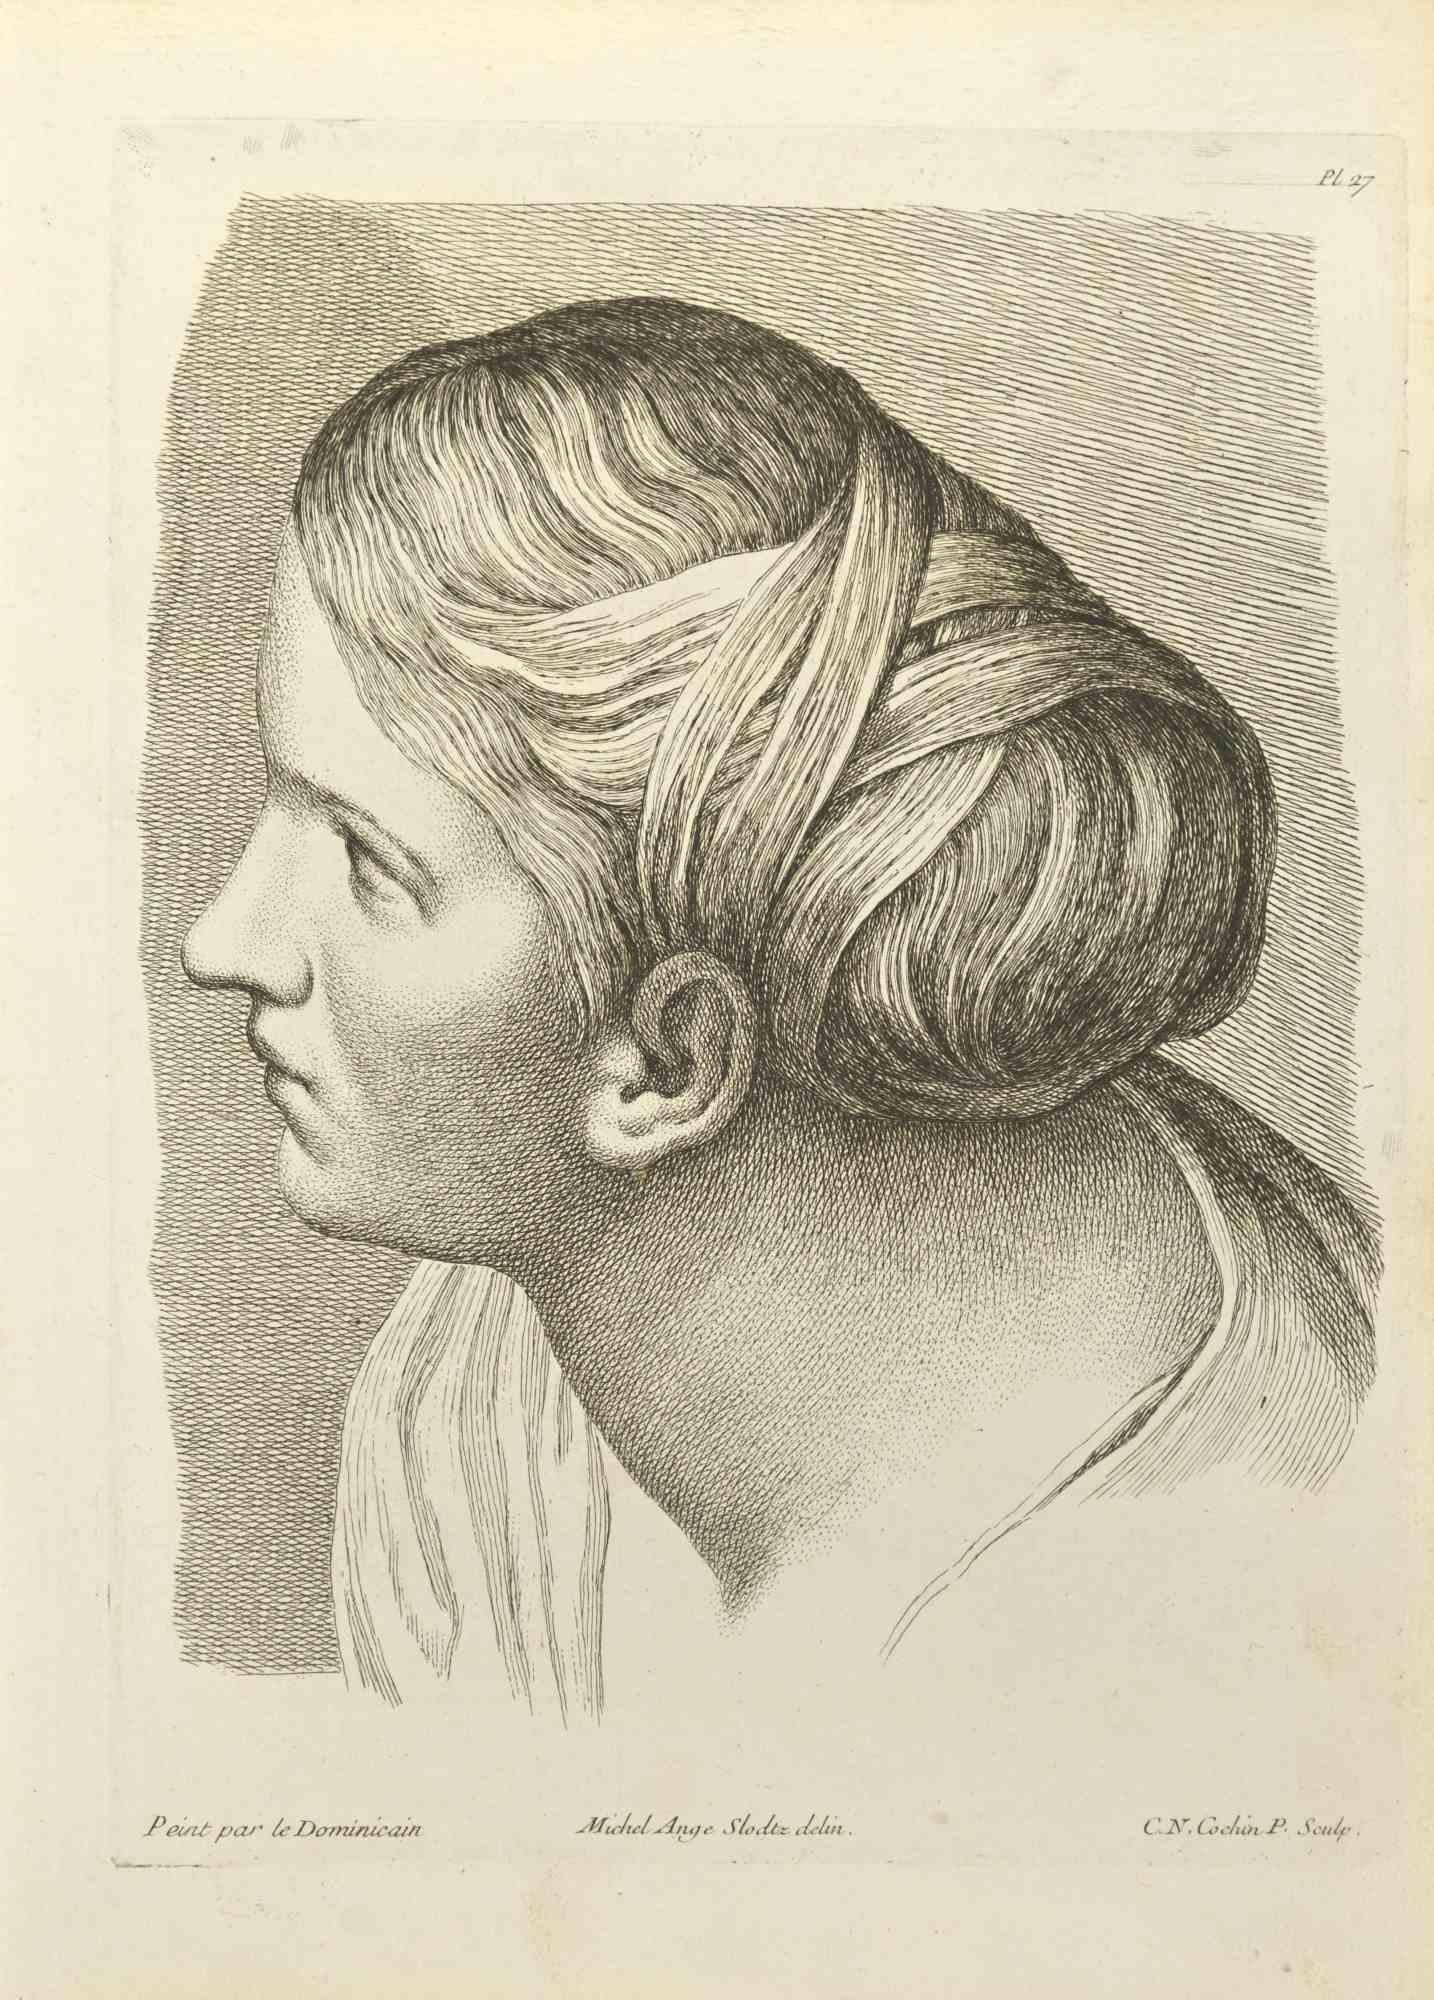 Das Porträt nach Domenichino ist eine Radierung von Nicholas Cochin aus dem Jahr 1755.

Gute Bedingungen.

signiert auf der Platte.

Das Kunstwerk wird mit sicheren Strichen dargestellt.

Die Radierung wurde für die Anatomie-Studie "JOMBERT,